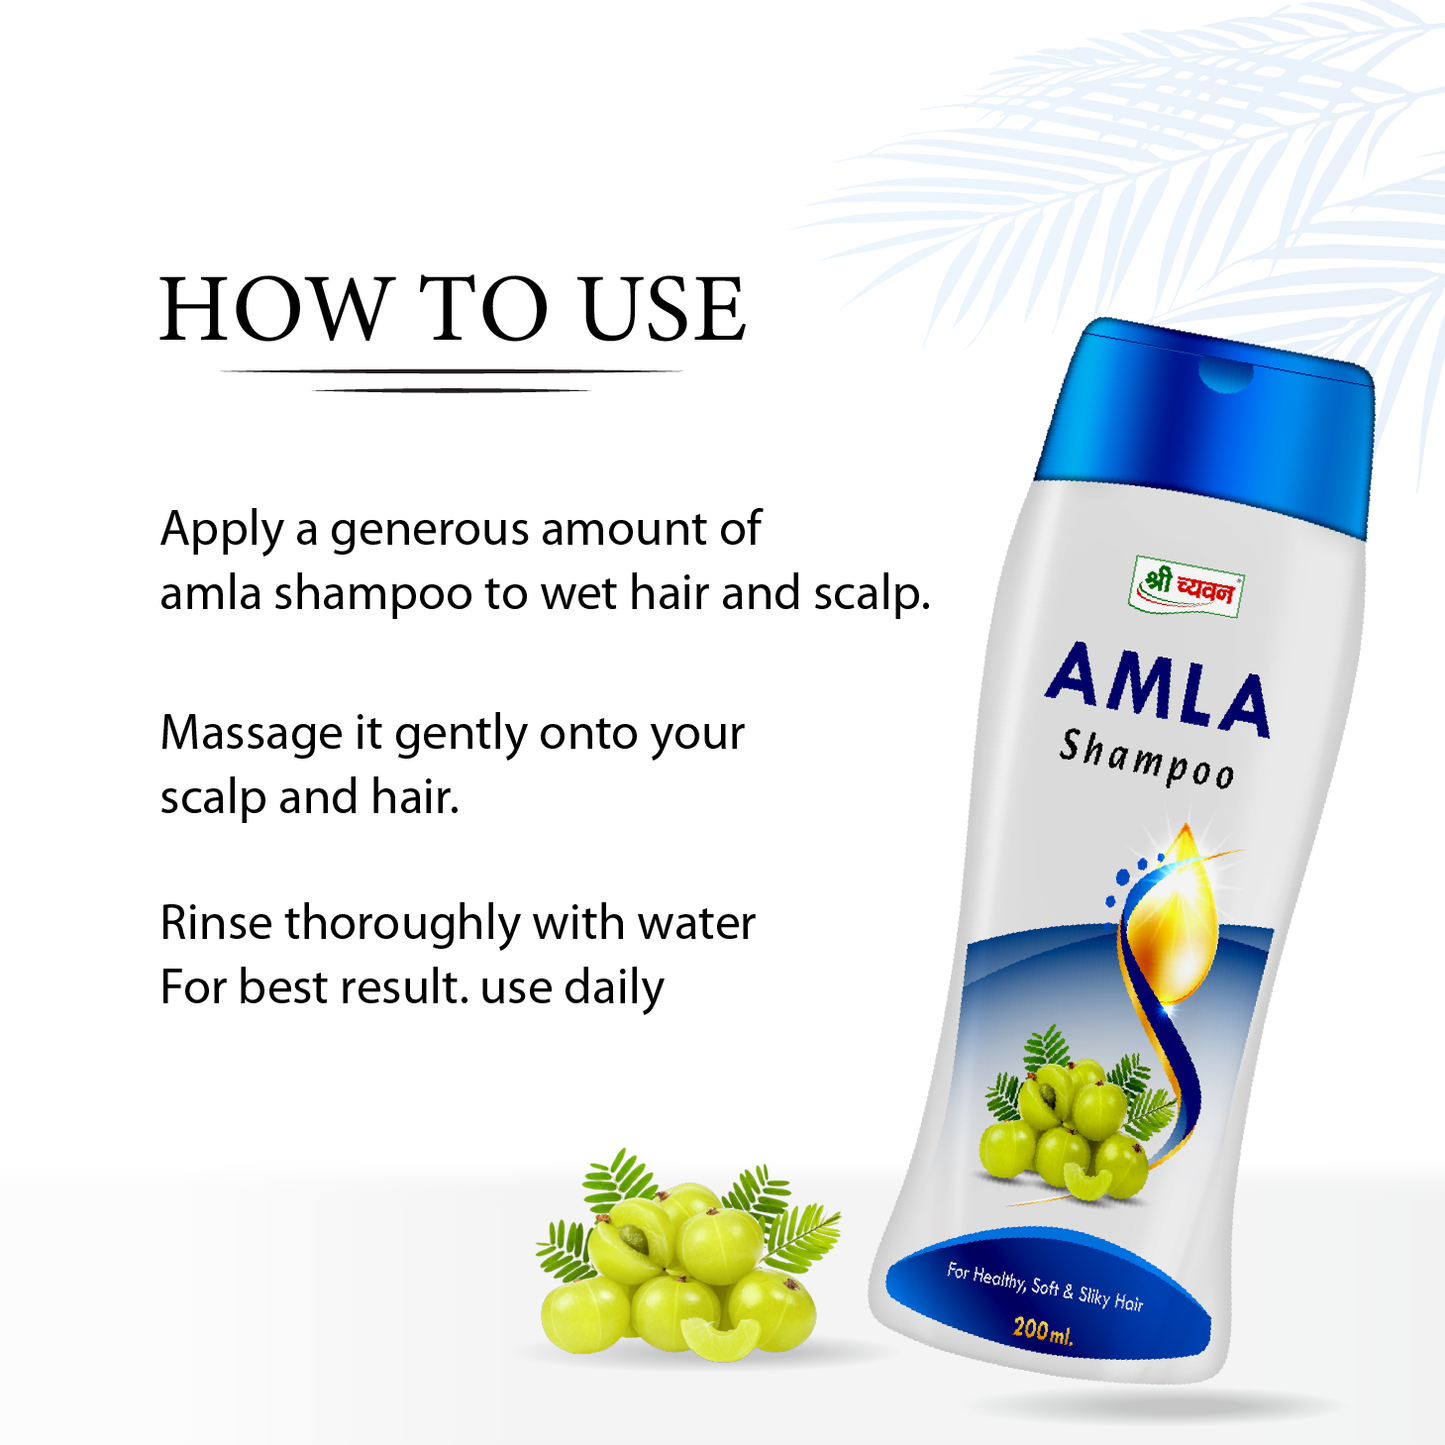 Amla Shampoo Uses